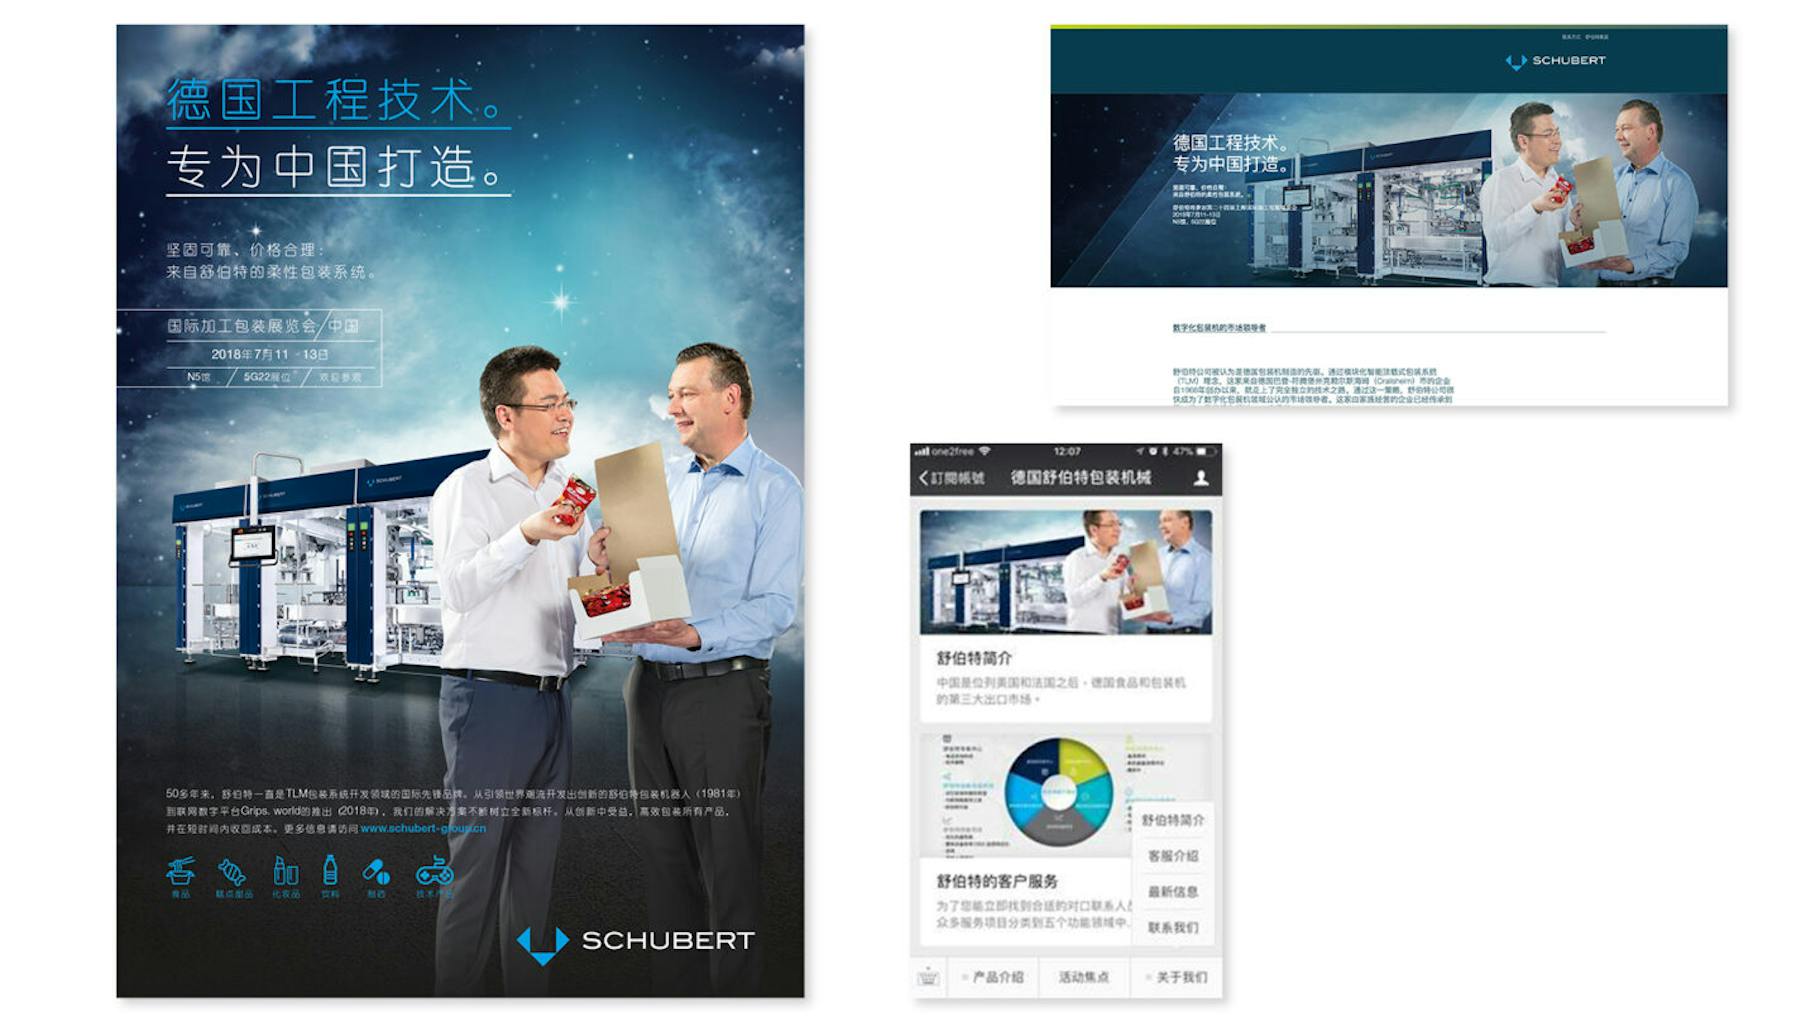 Ausschnitte von chinesischen Anzeigen für die Gerhard Schubert GmbH, die von einer b2b marketing agentur erstellt wurden 